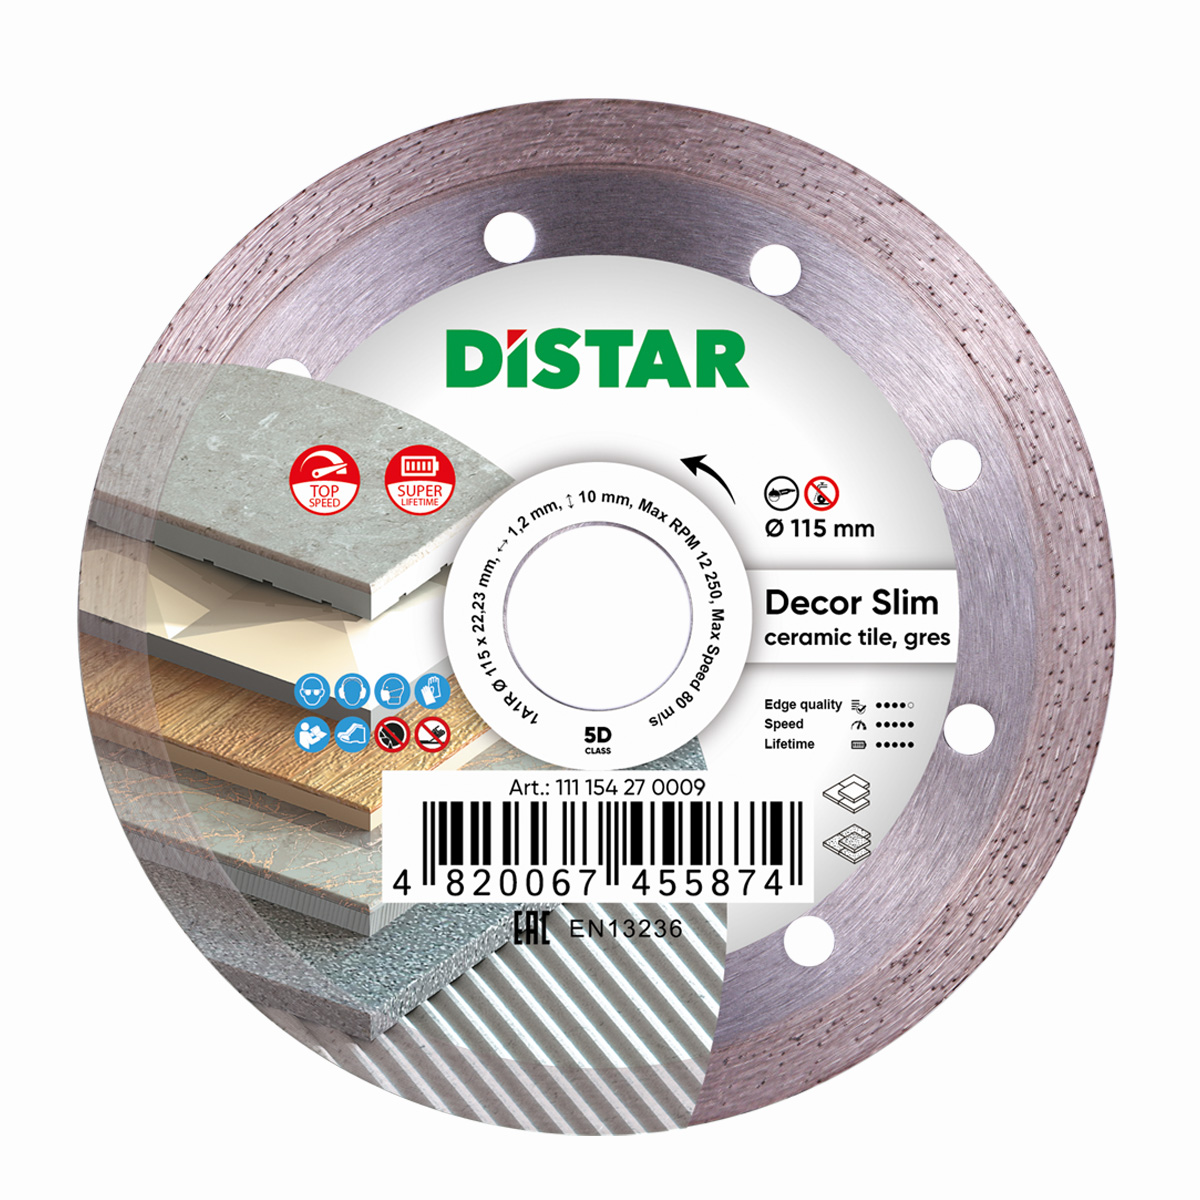 Диск алмазный отрезной по керамике и керамограниту для УШМ Distar 1A1R 115мм Decor Slim 5D диск алмазный отрезной по керамике и керамограниту distar 1a1r 250 мм hard ceramics 5d